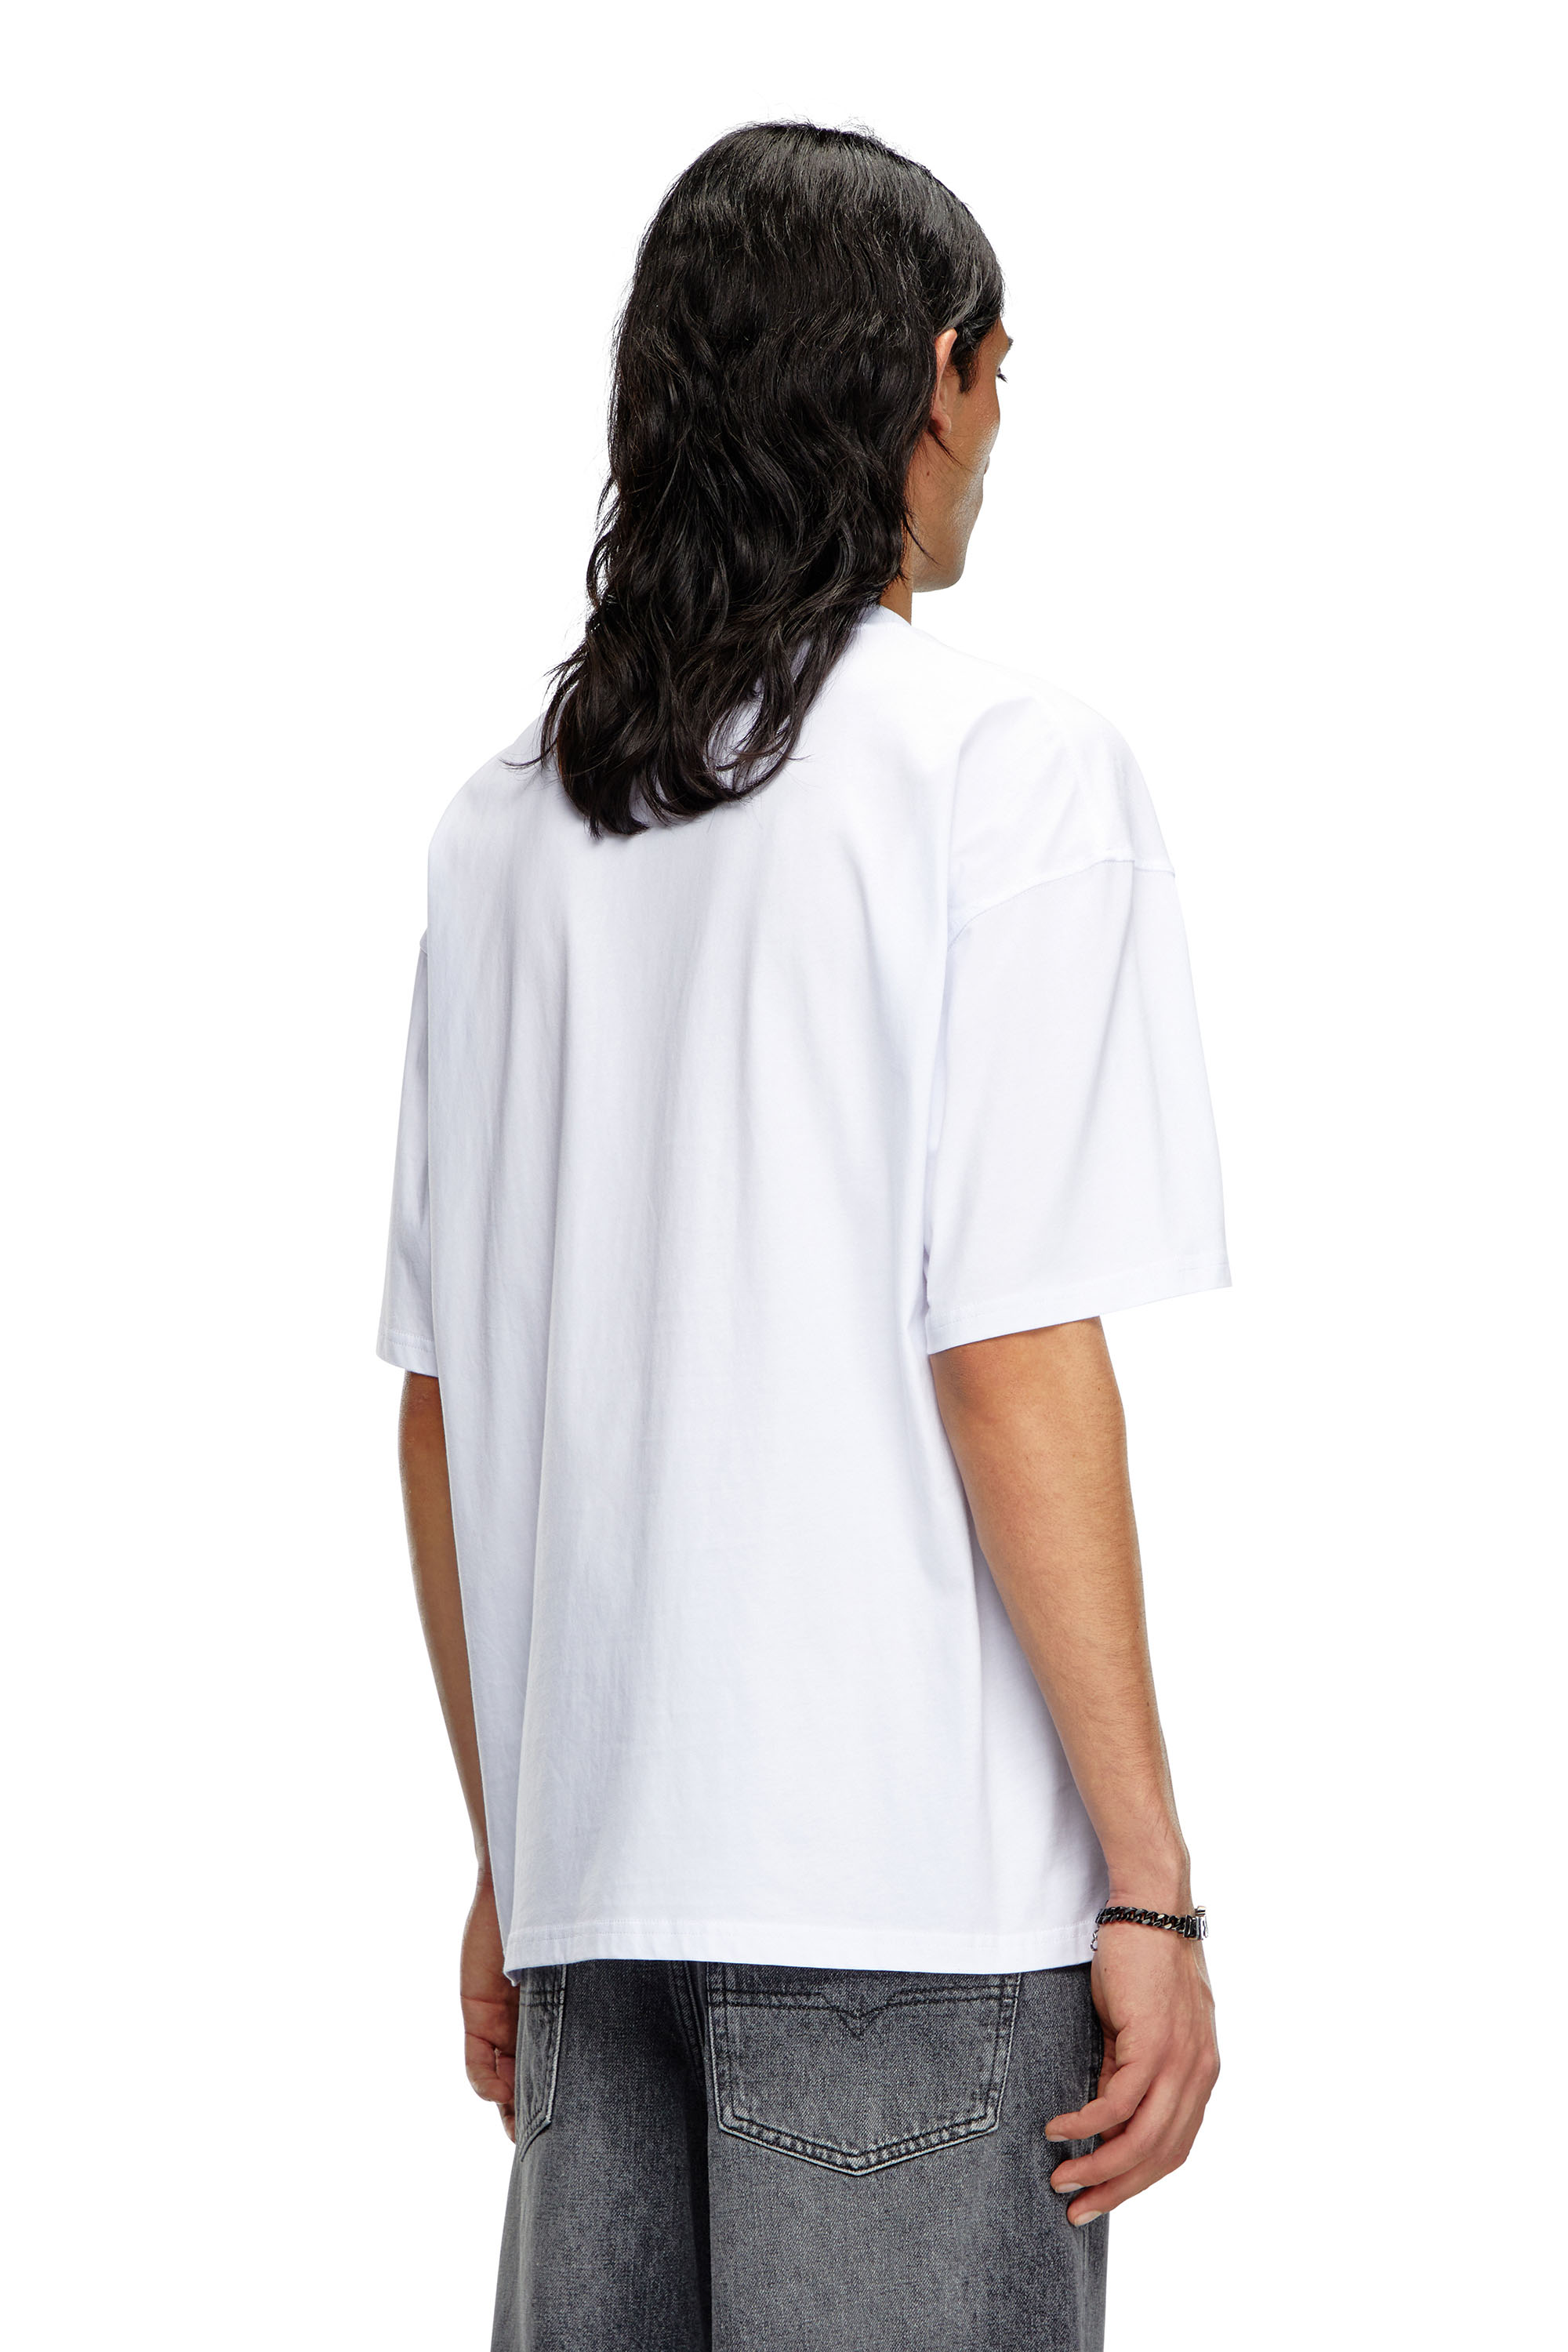 Diesel - T-BOXT-OD, Unisex Camiseta con Oval D bordado in Blanco - Image 2